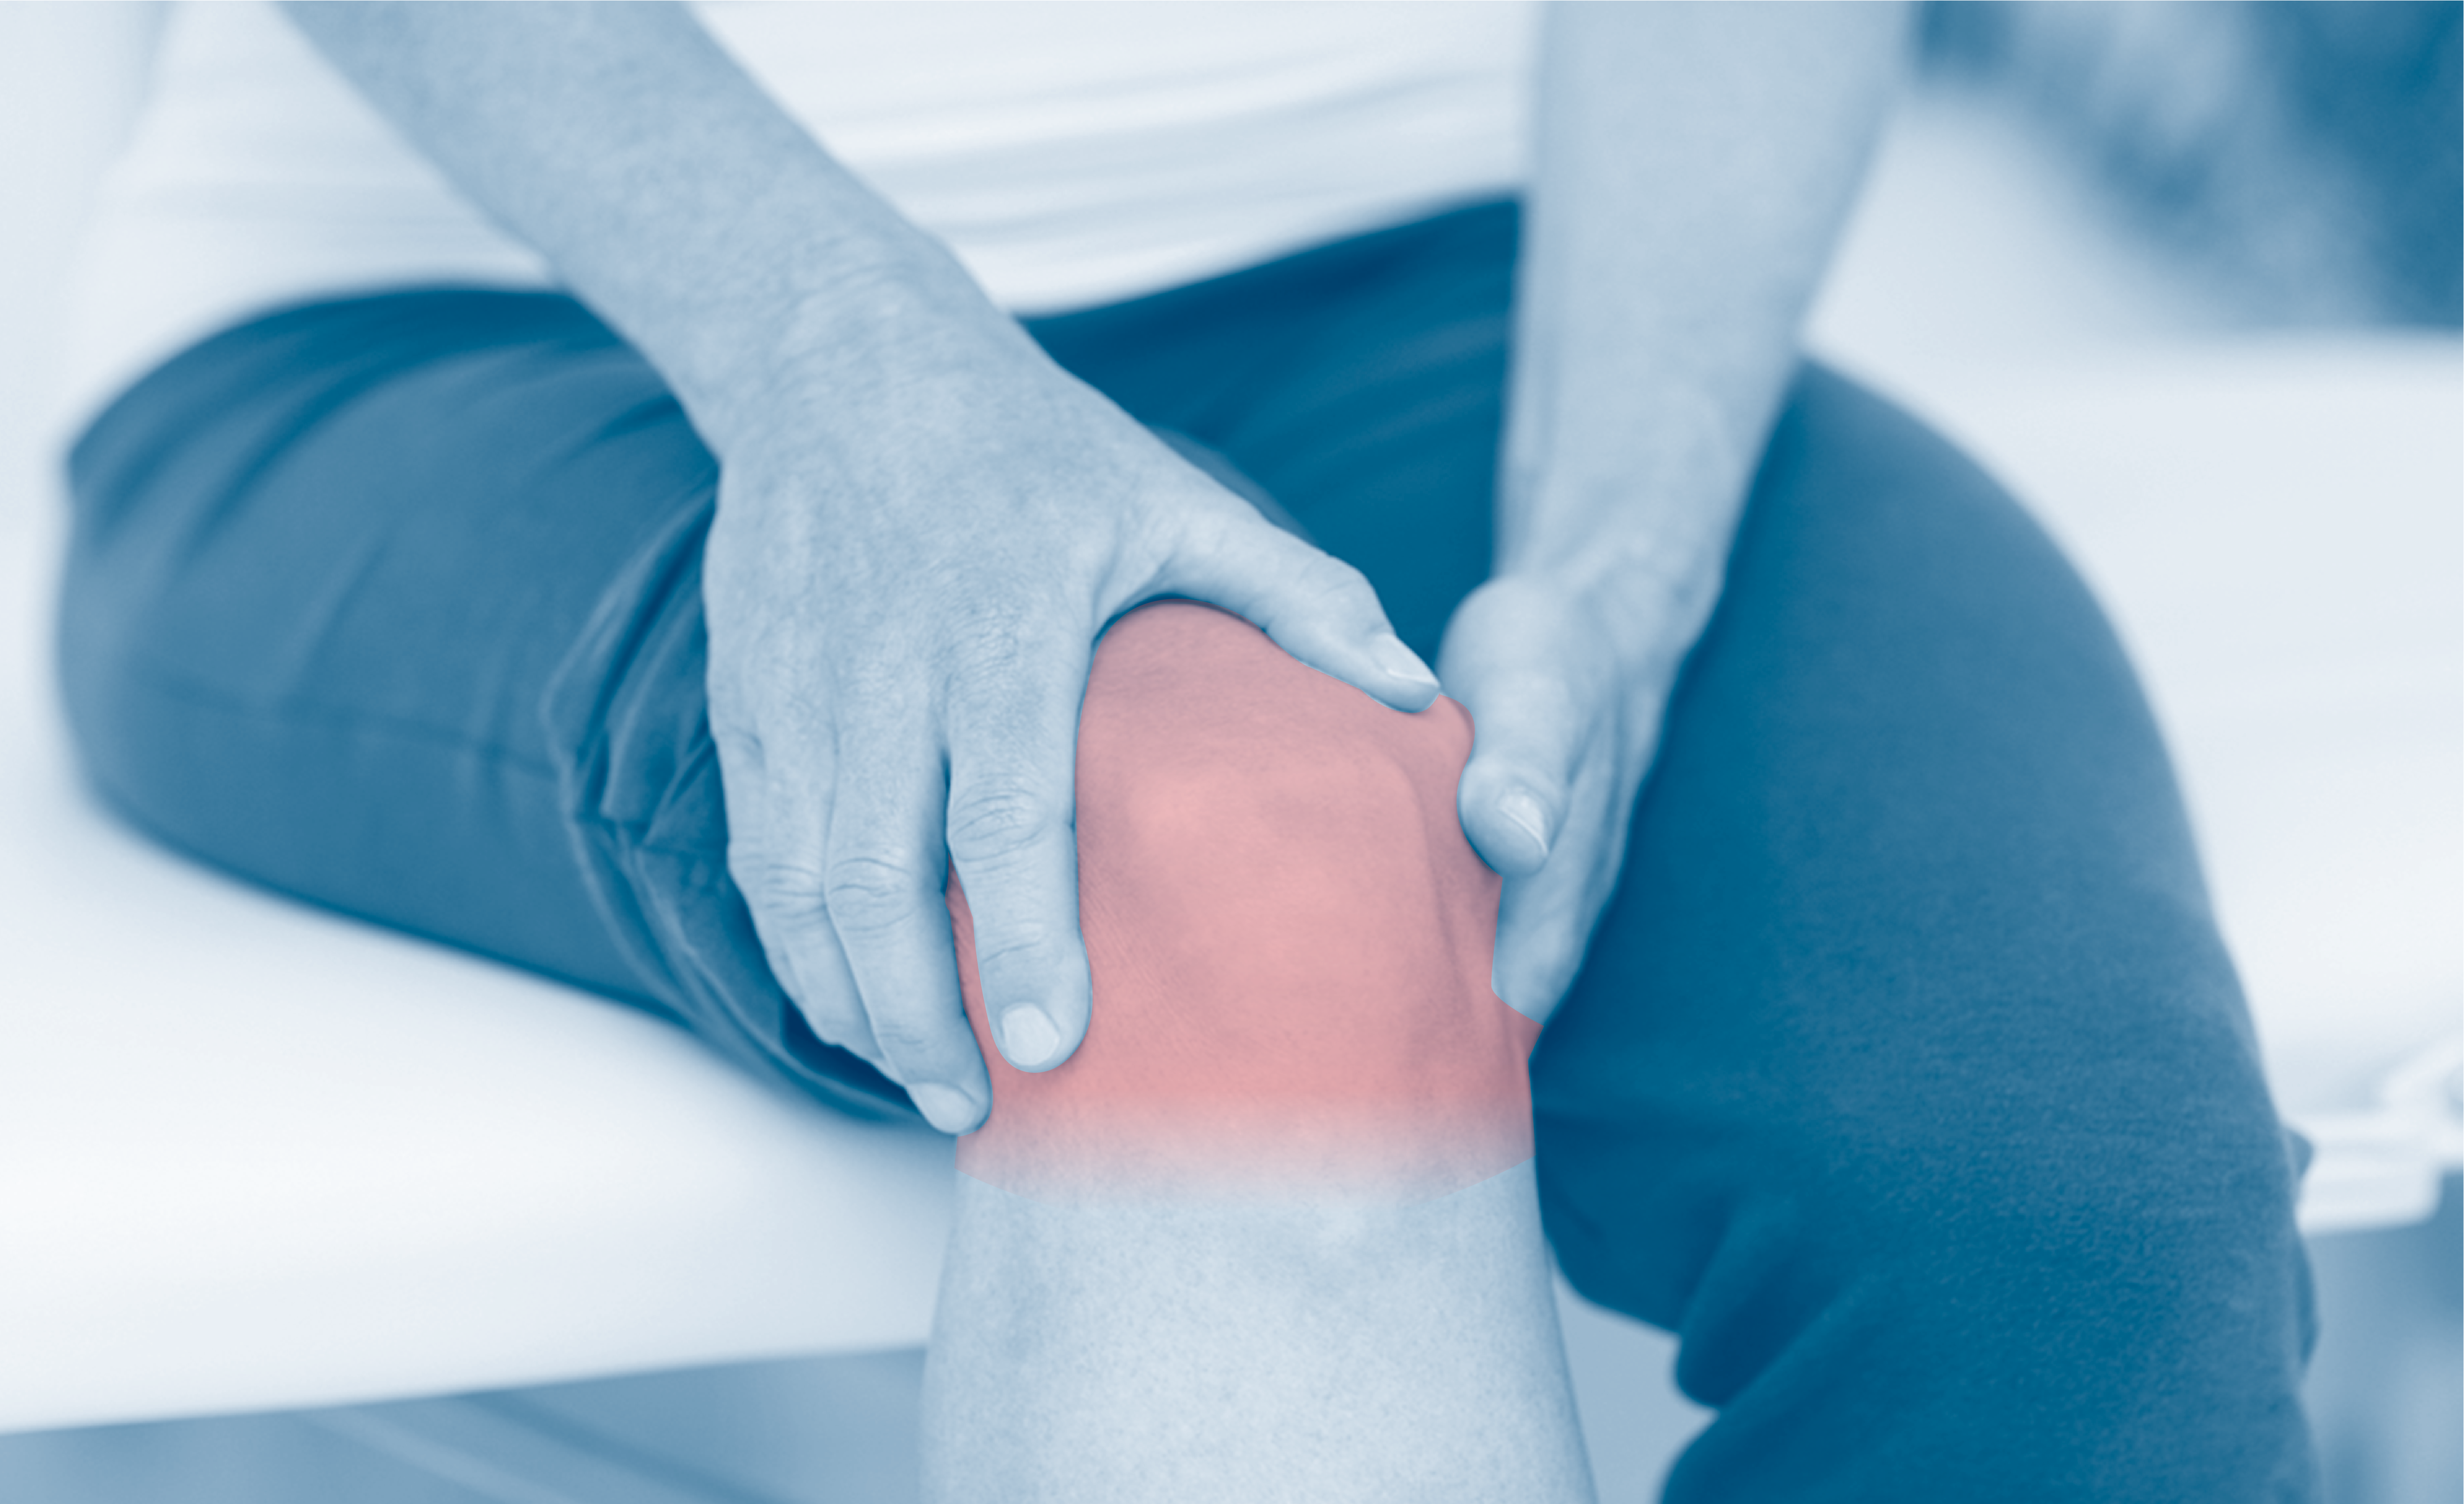 Pain from bone on bone pressure in knee